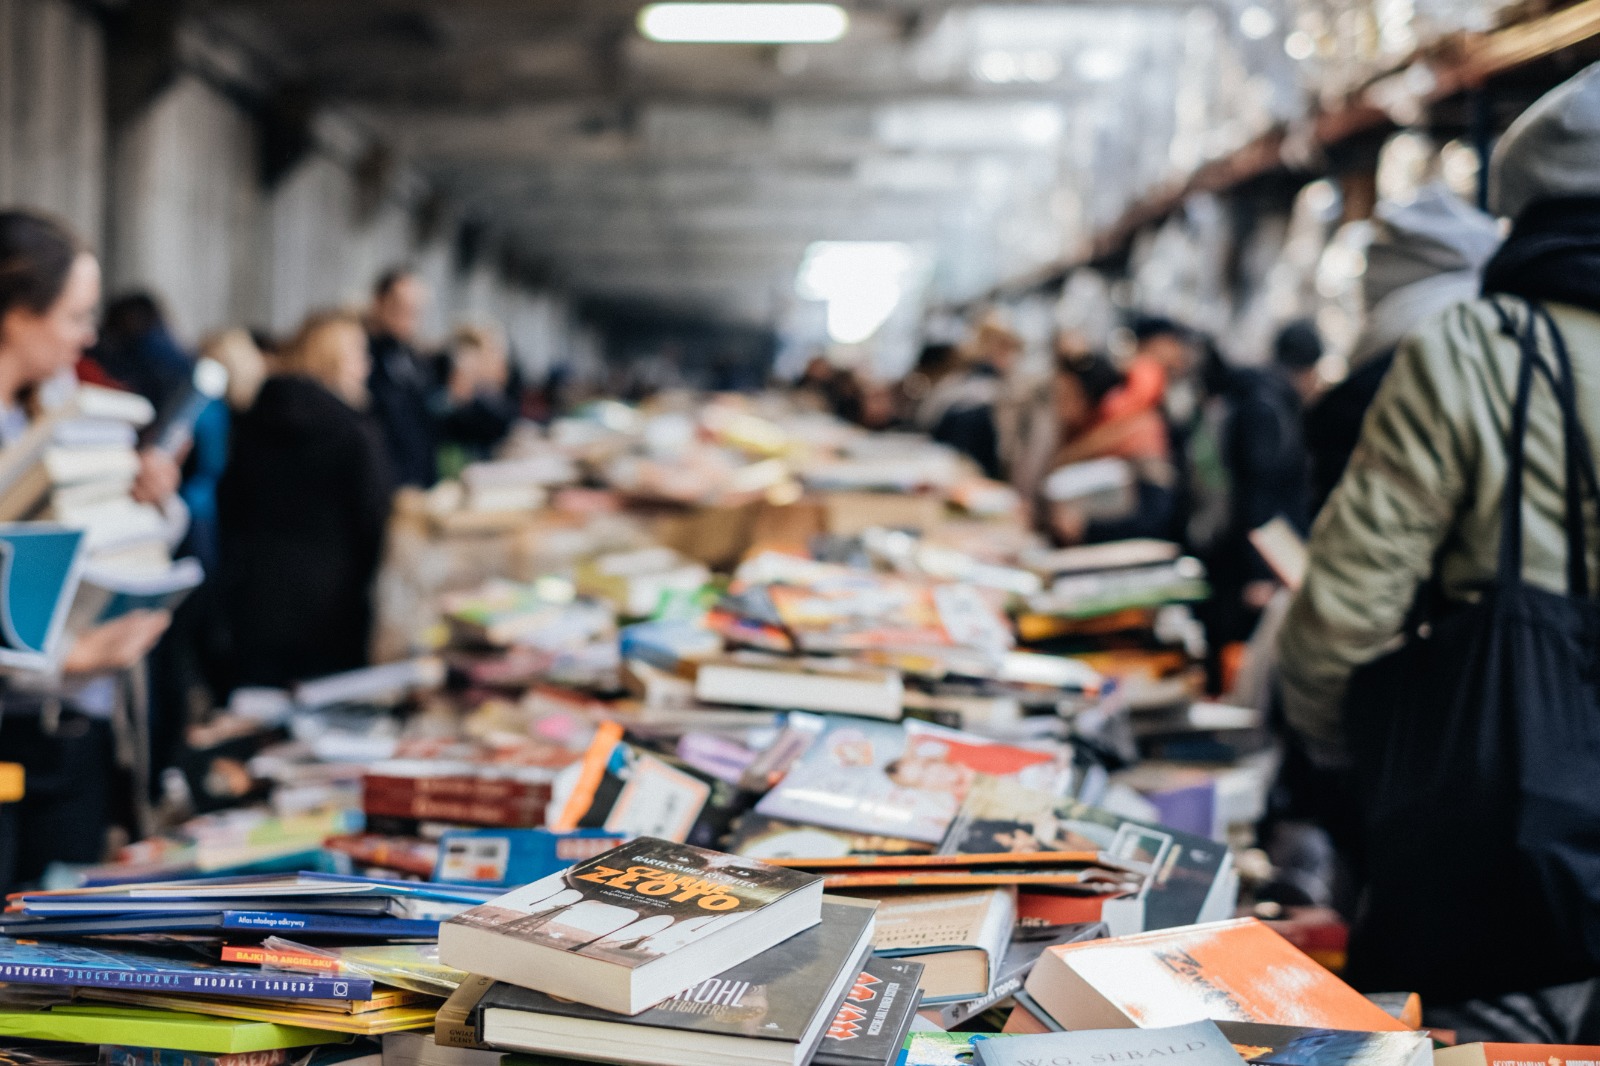 Pecinta Buku Ingin Berburu Diskon? Ini Bazar Buku Tahunan di Indonesia yang Banjir Diskonan